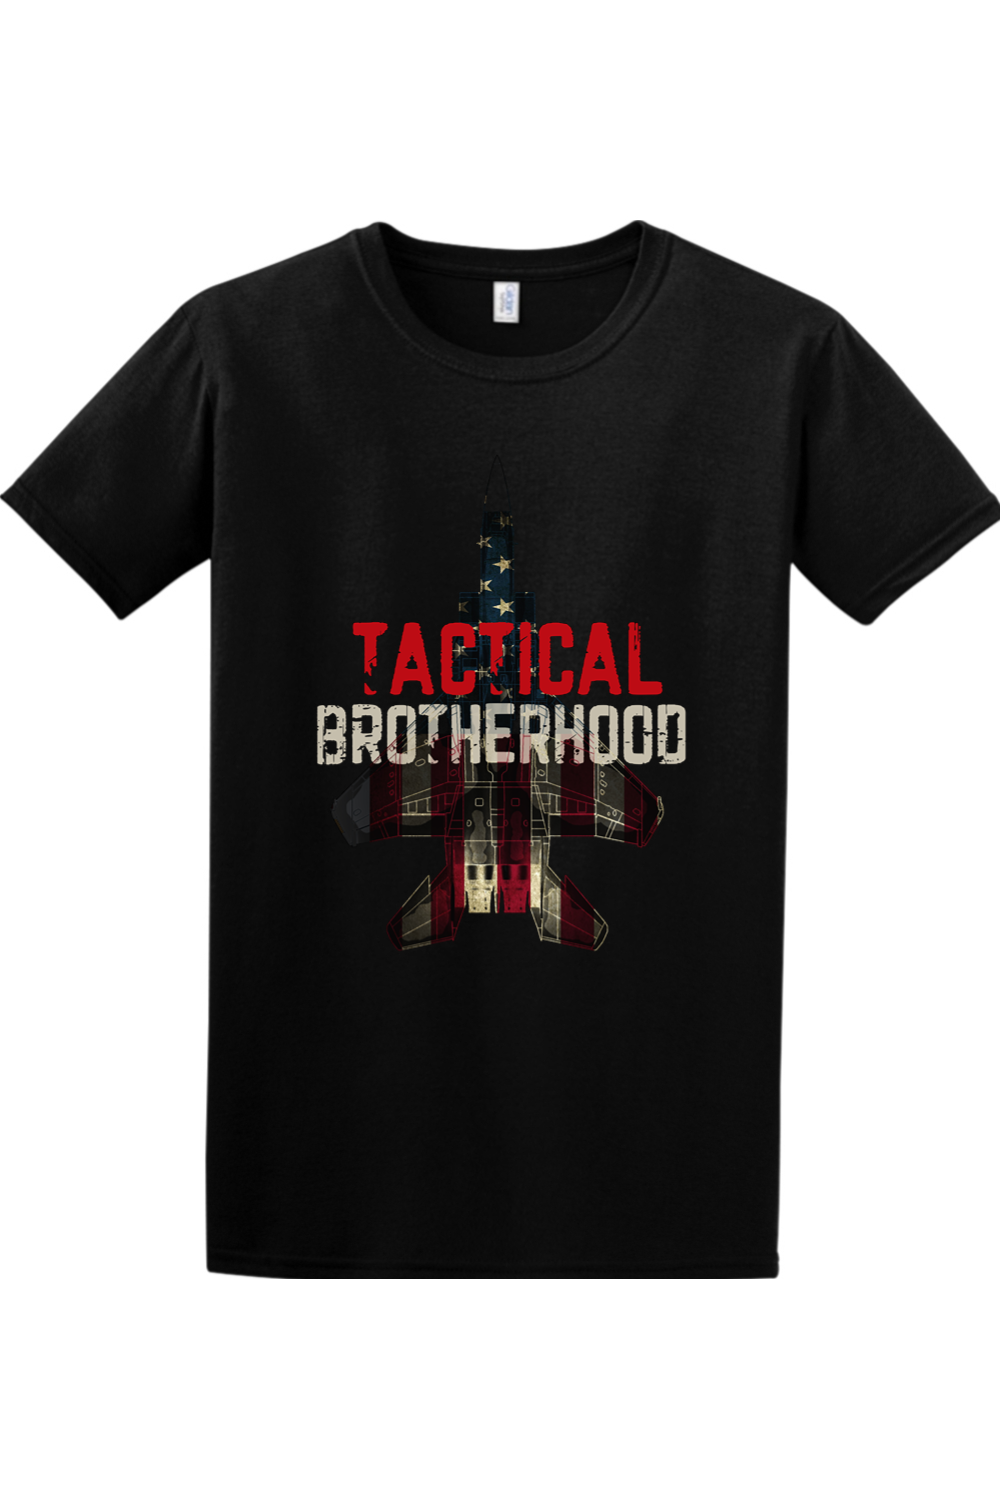 Jet - Tactical Brotherhood